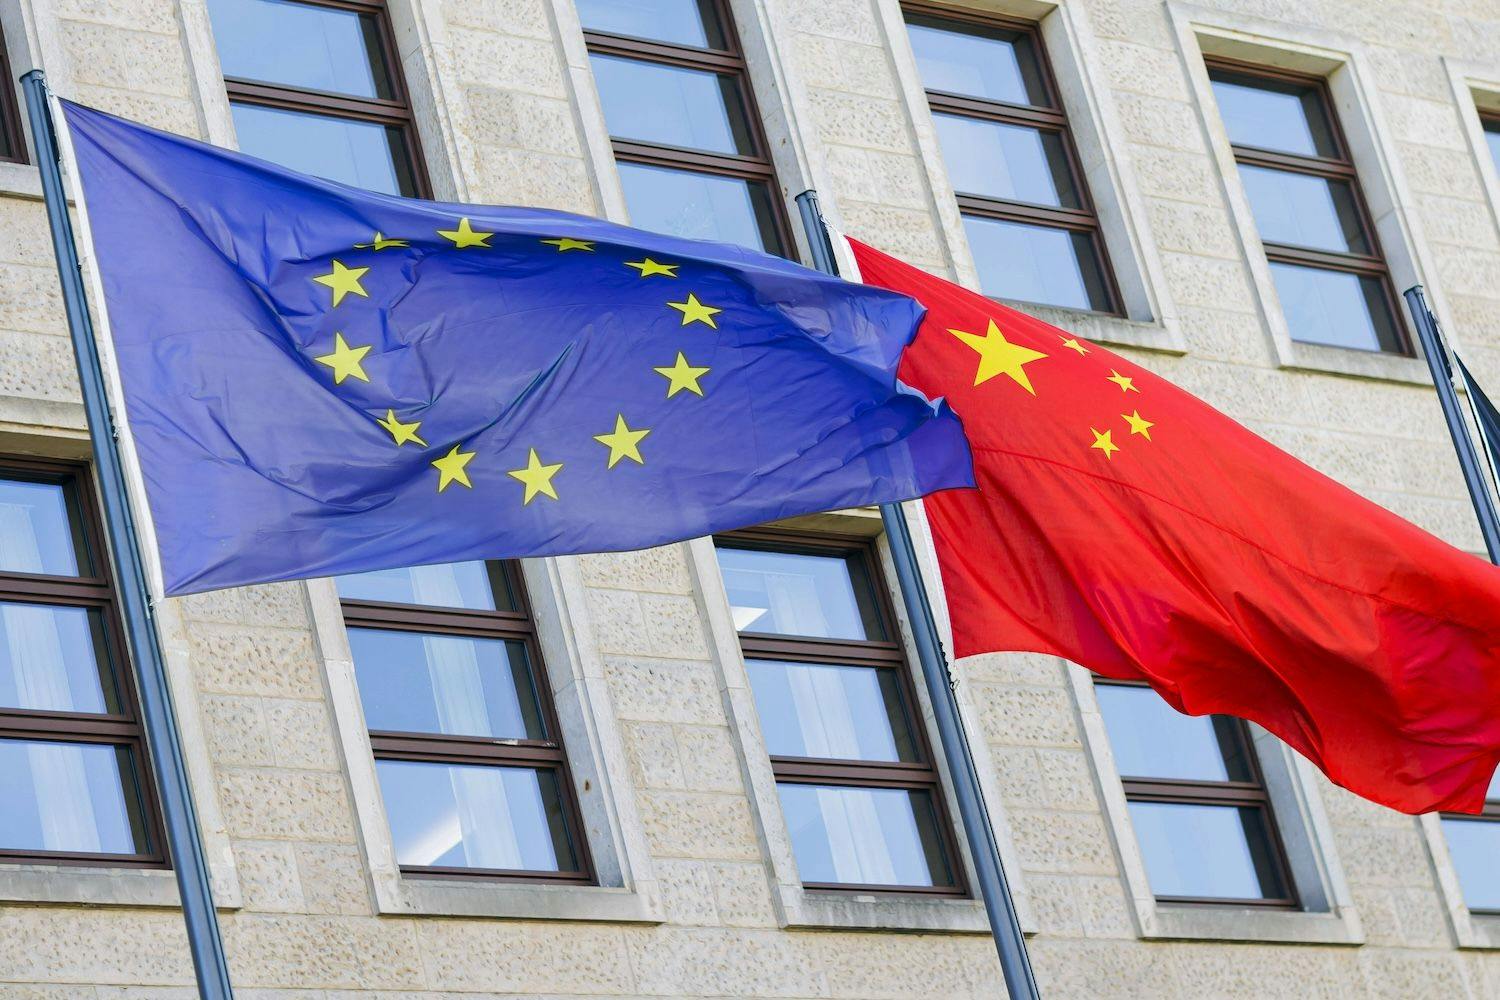 China News, Nachrichten, Aktuelles, Politik, EU, Außenpolitik: Die Flaggen von Europa und China wehen vor dem Auswaertigen Amt in Berlin